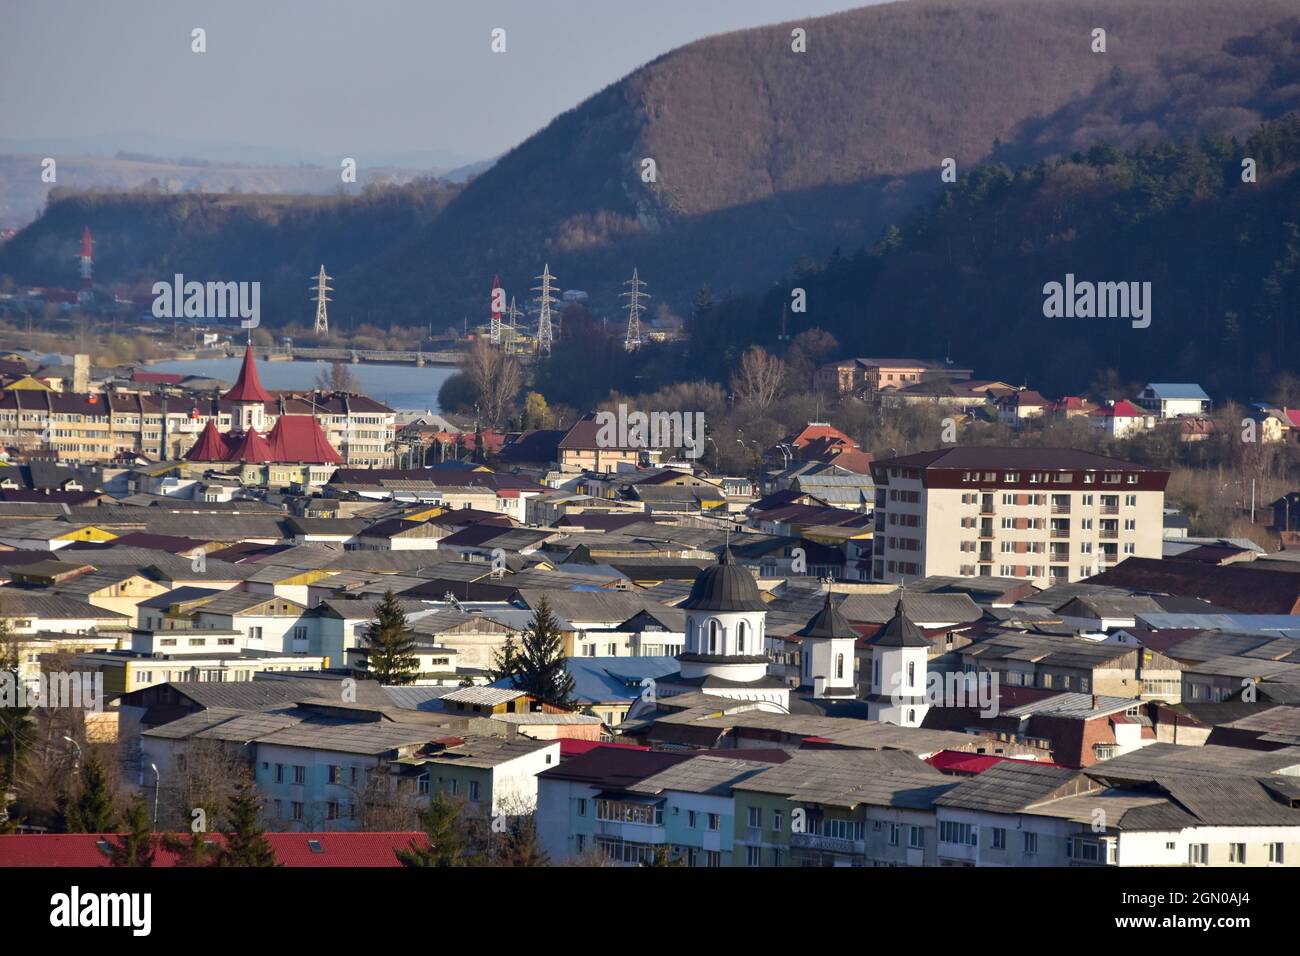 Scenic view of the Piatra Neamt city in Romania Stock Photo